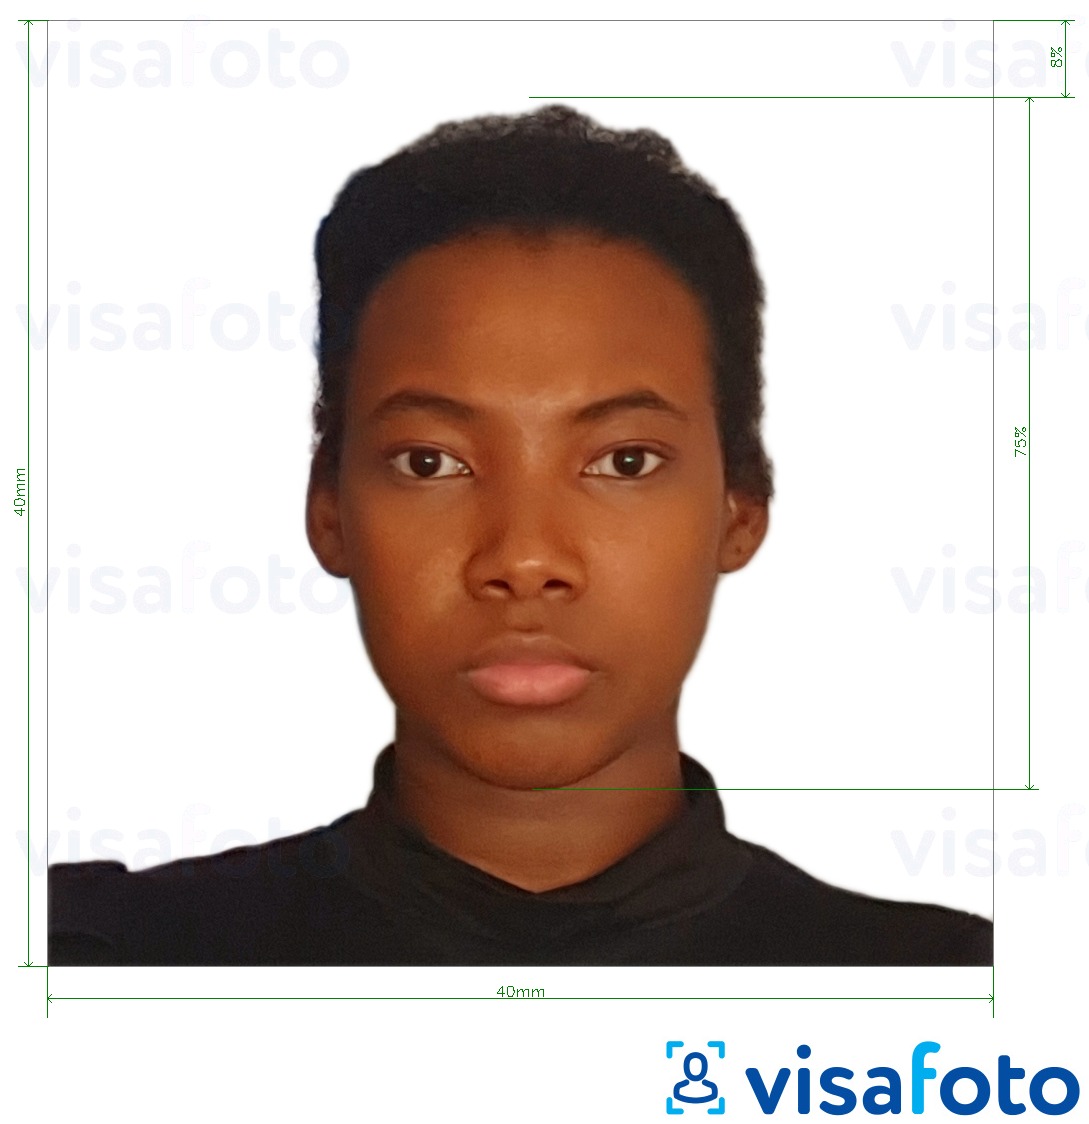 Ejemplo de foto para Visado Camerún 4x4 cm (40x40 mm) con la especificación del tamaño exacto